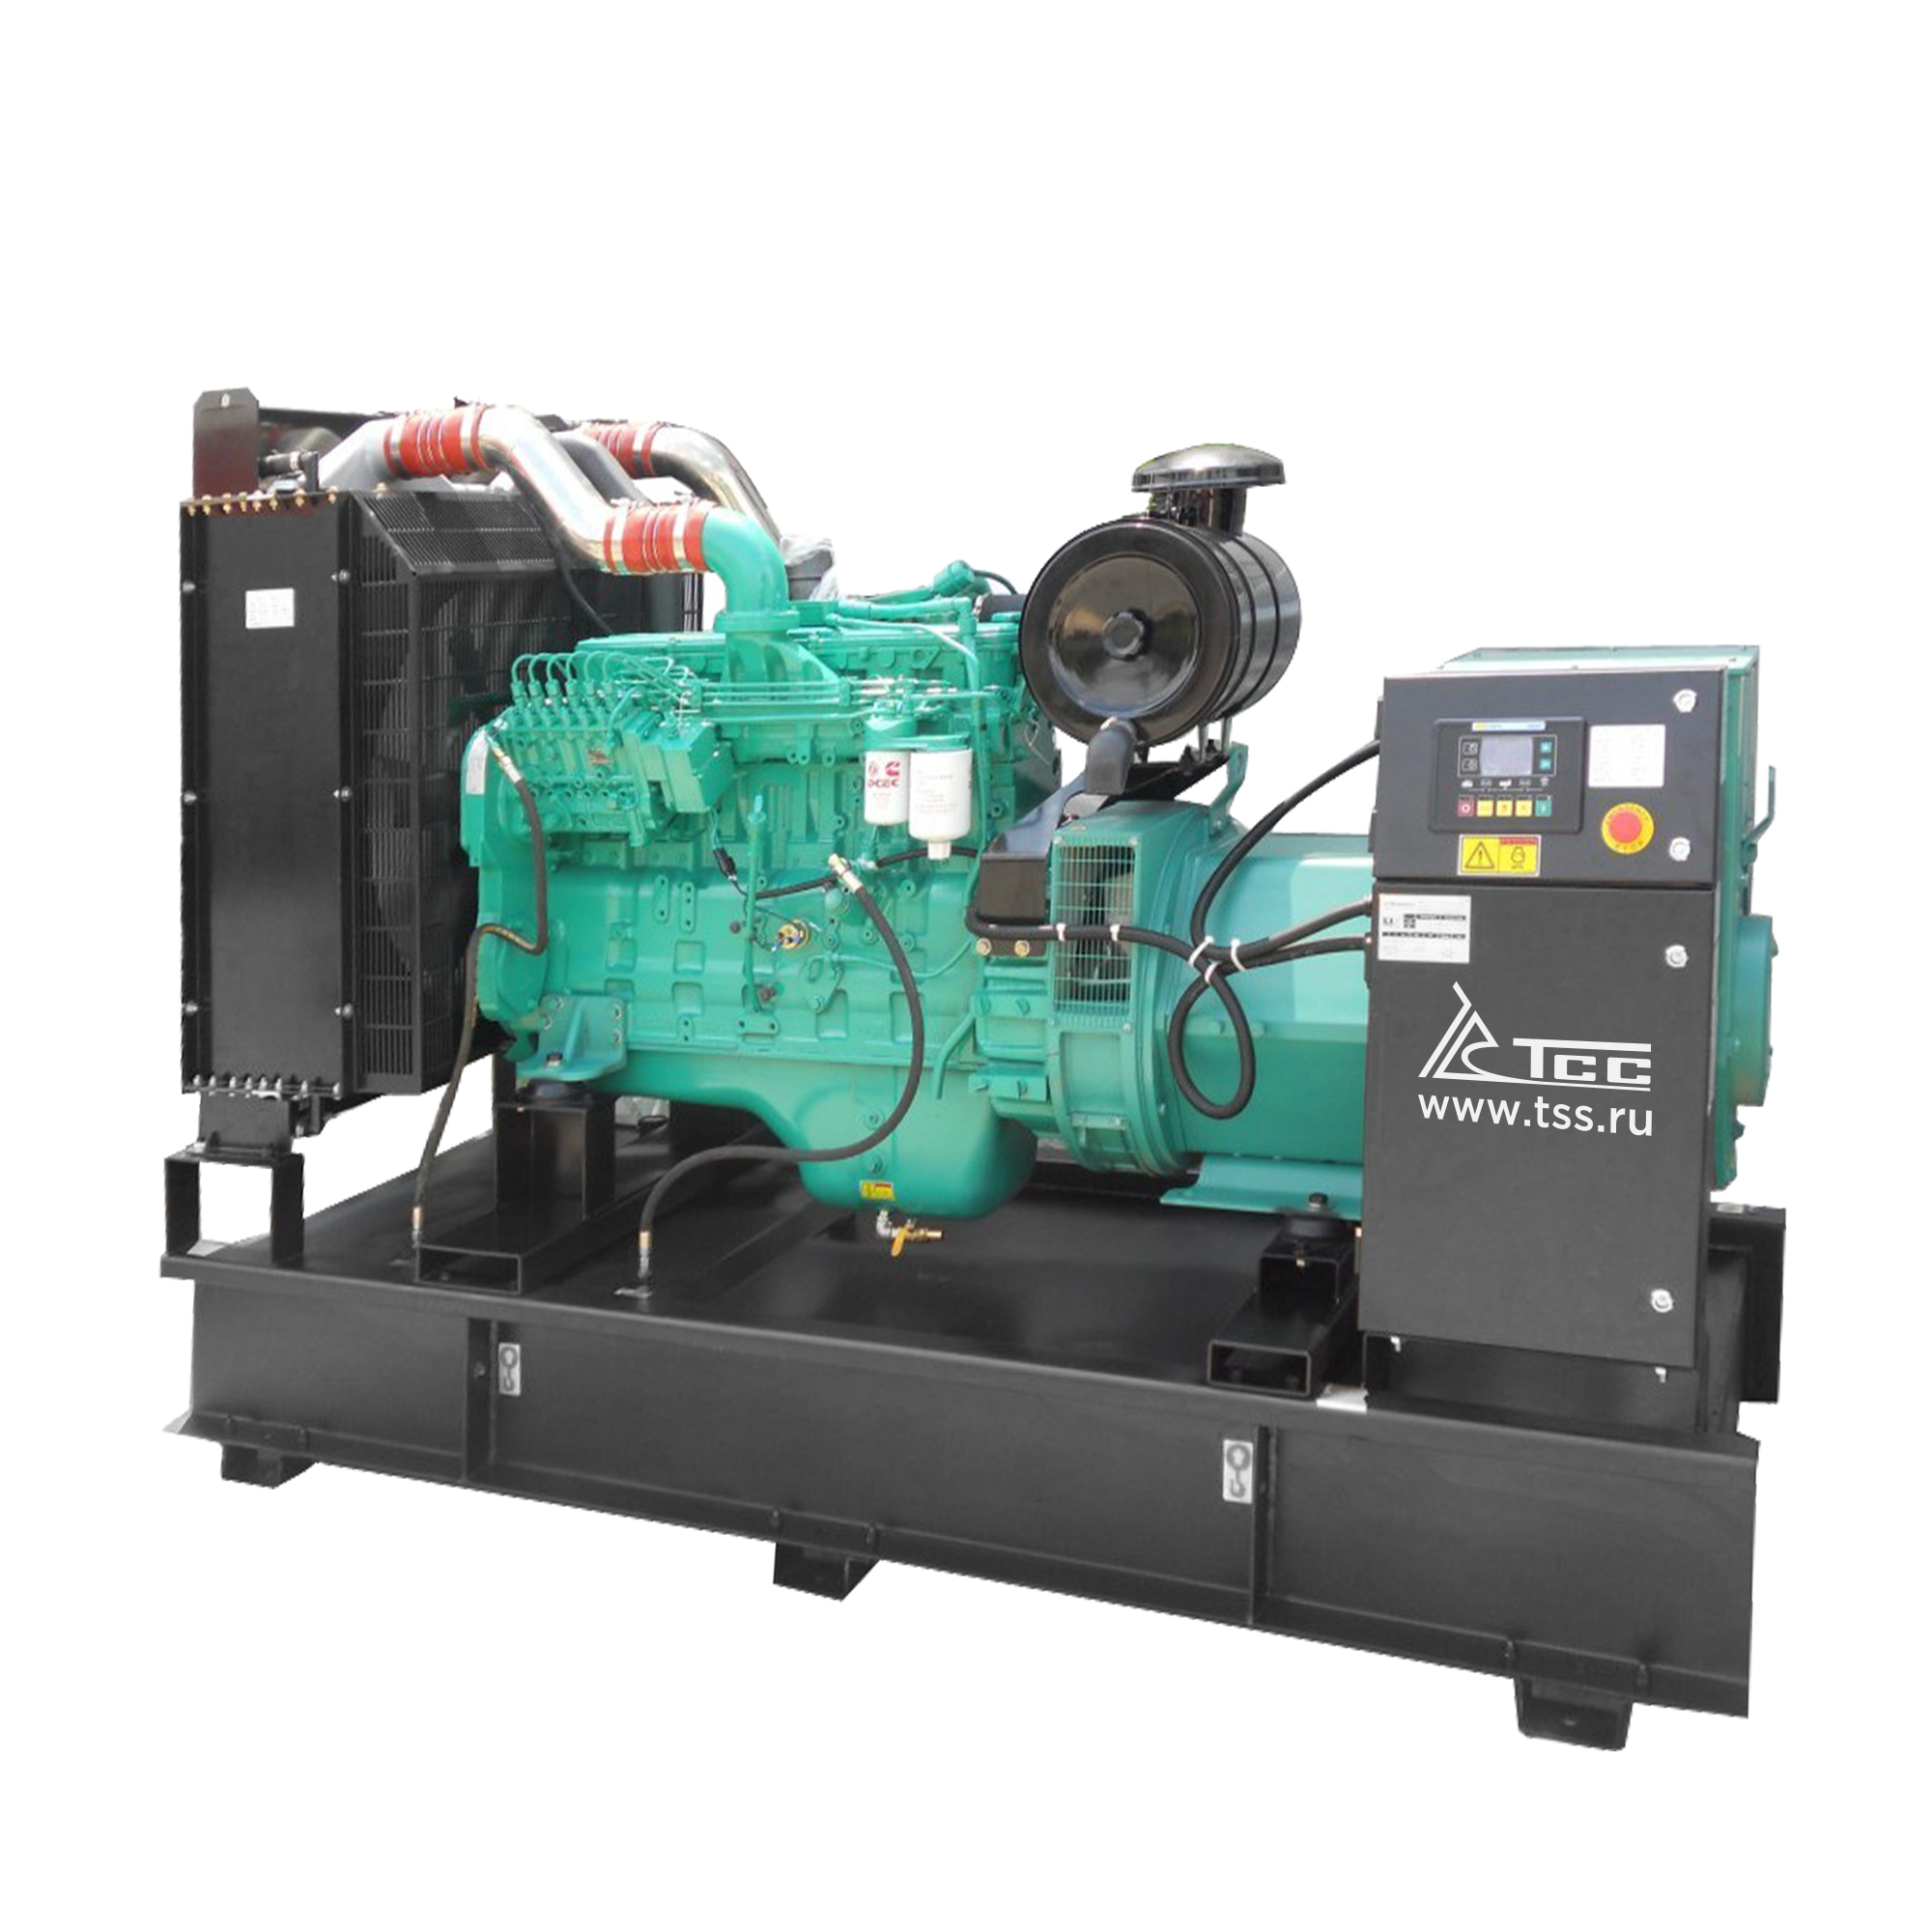 Дизельный генератор ТСС АД-108C-Т400-1РМ15 дизельный генератор тсс ад 108c т400 1ркм15 в шумозащитном кожухе